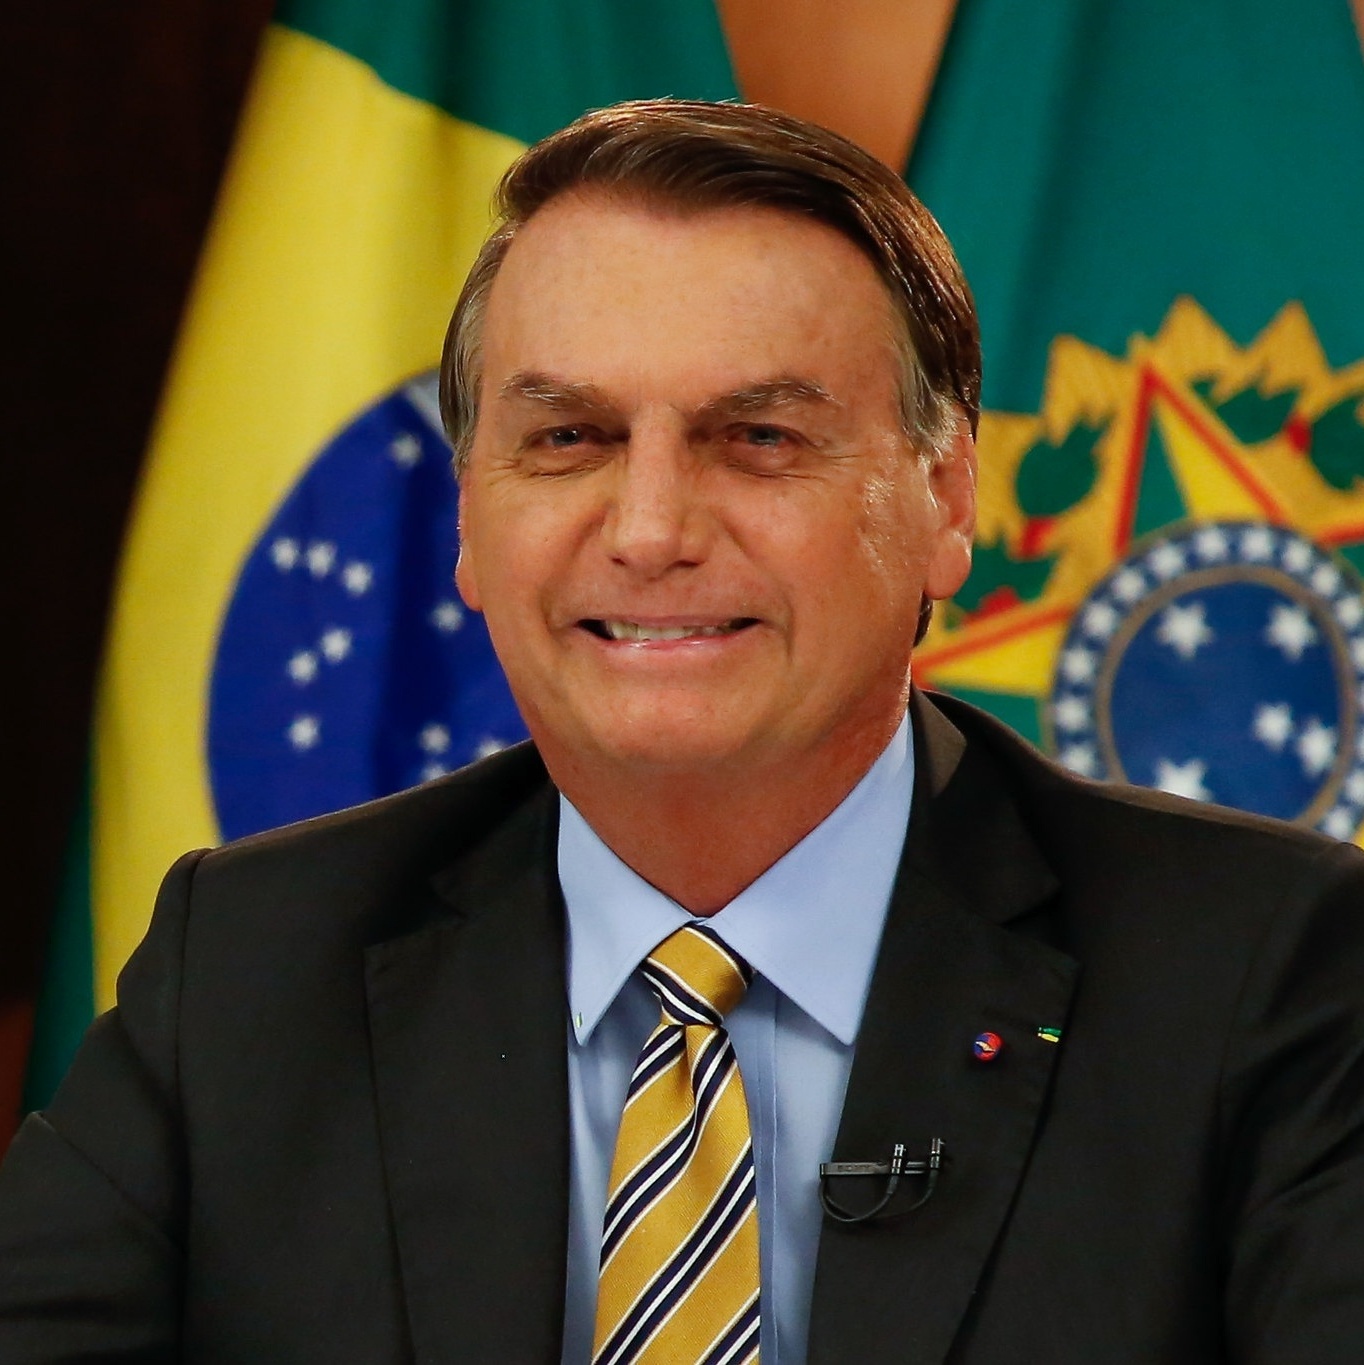 Clube Português de Niterói - RJ: Cancelamento da palestra com Jair Bolsonaro